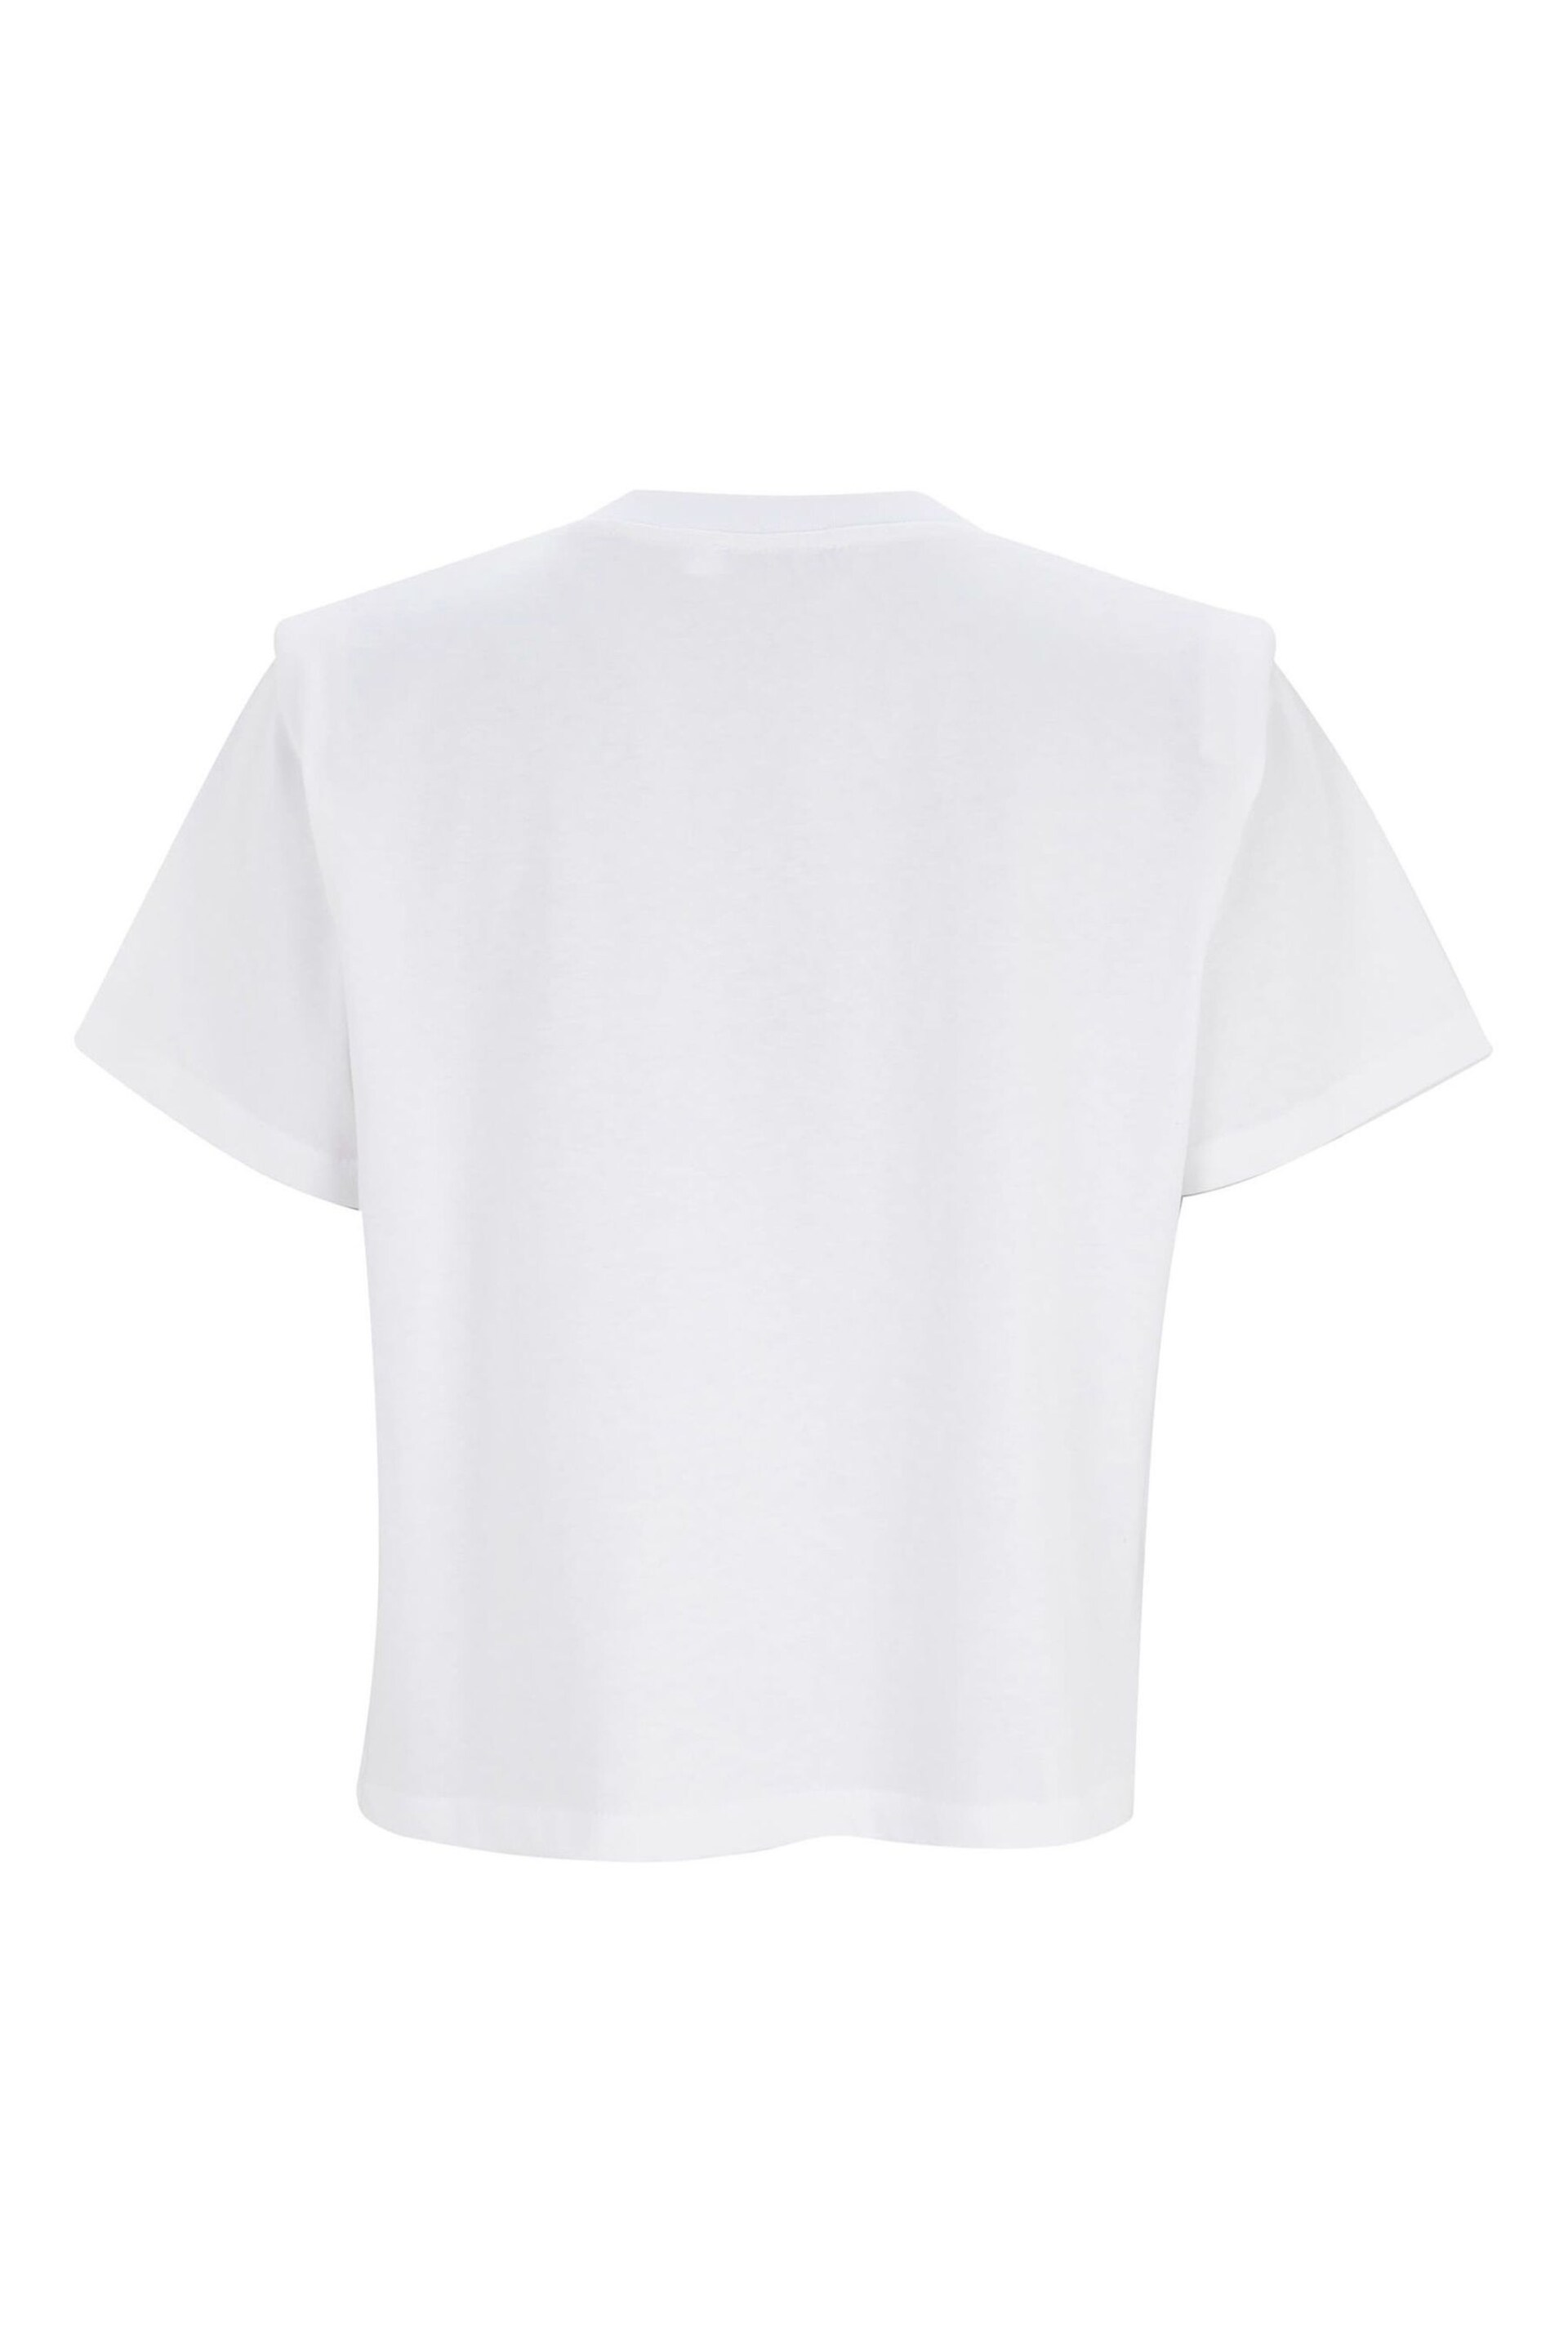 Mint Velvet White Cotton Padded T-Shirt - Image 4 of 4